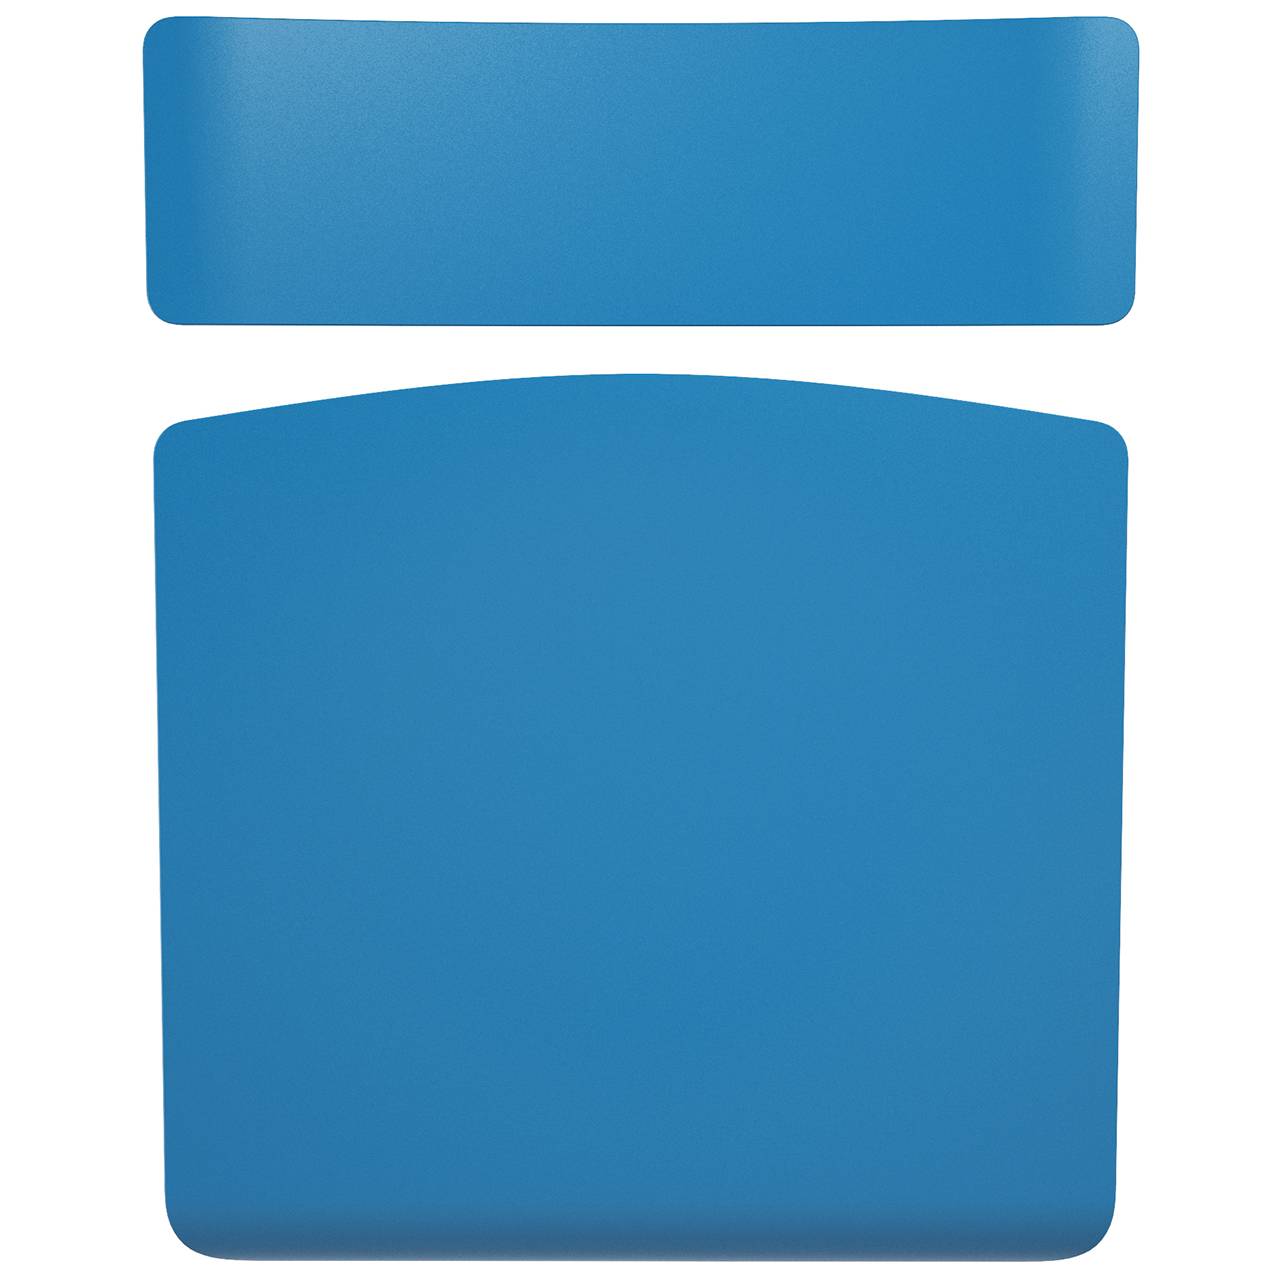 Стул ученический регулируемый (гр. 2-4, 3-5, 4-6 или 5-7) коричневый Синий 4-6 прямоугольная